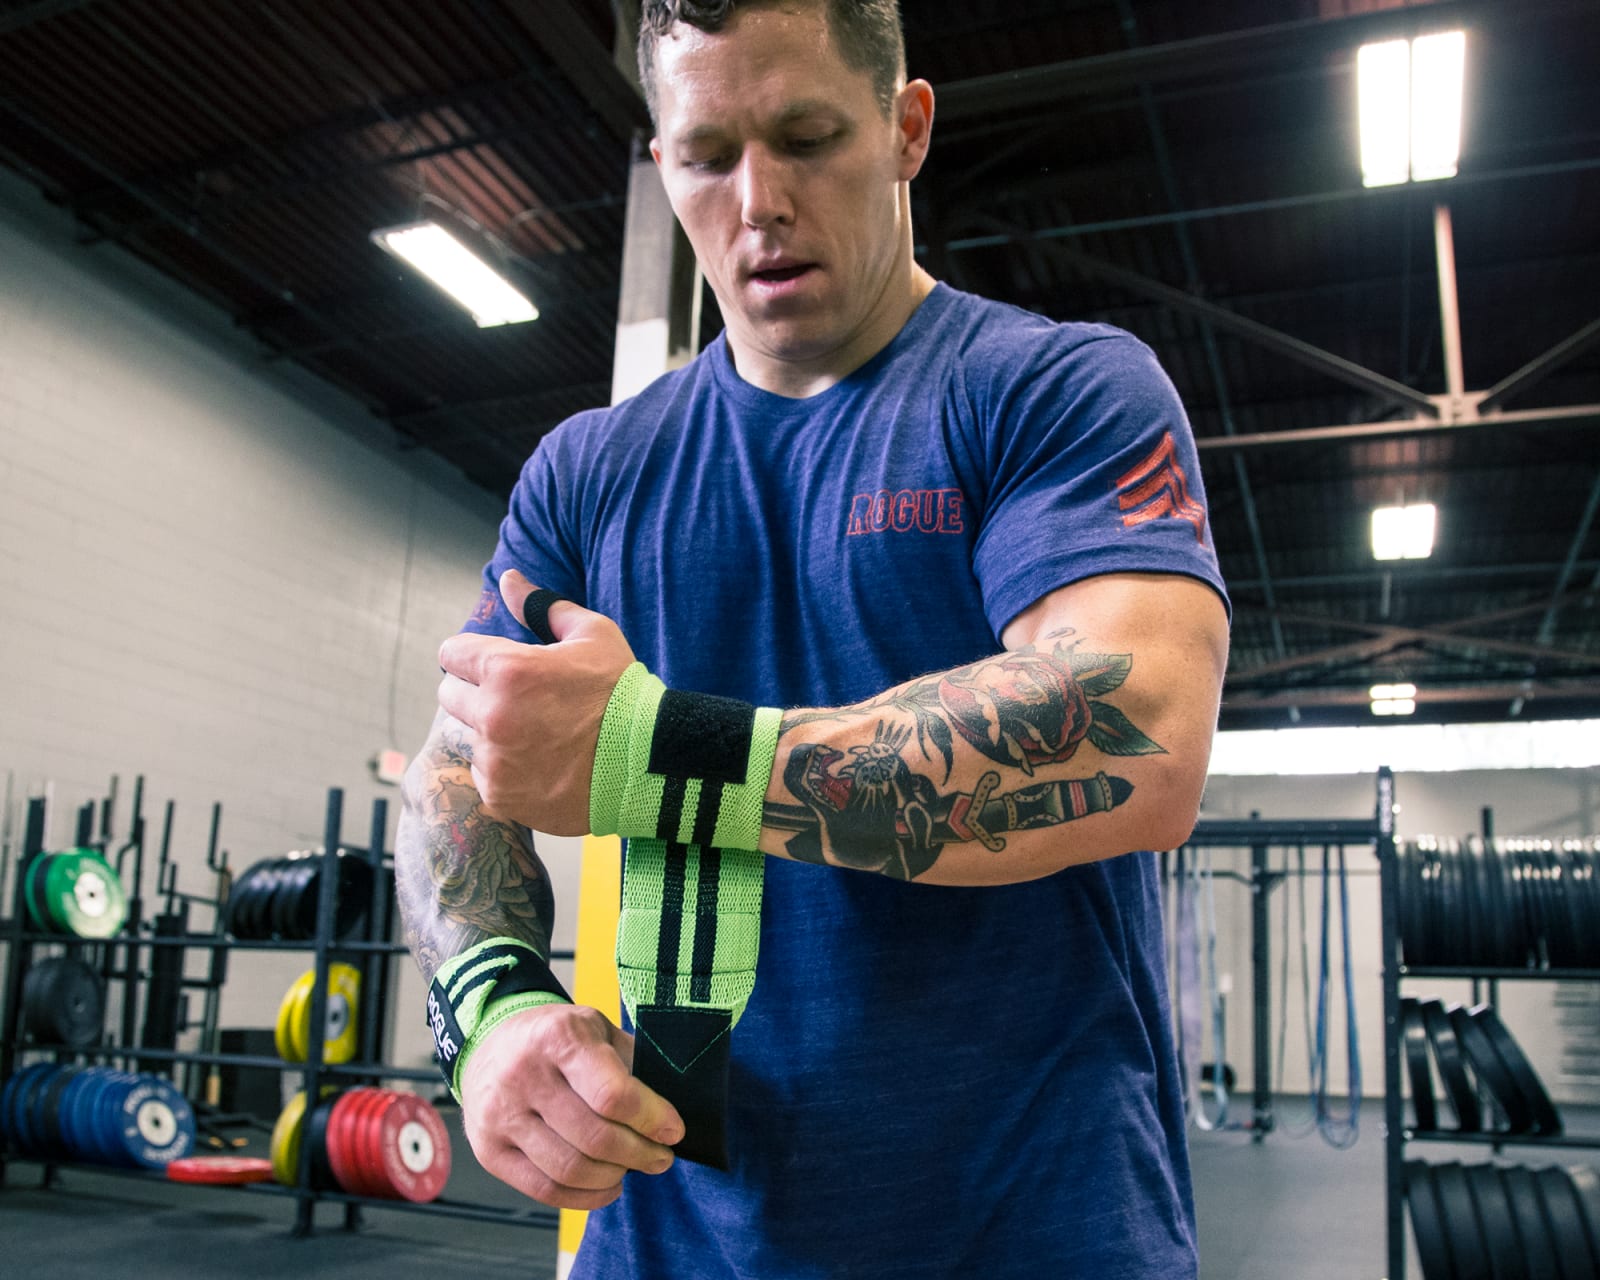 TraininGear Wrist Wraps Black Green Weightlifting Lifting Crossfit Gear Training 